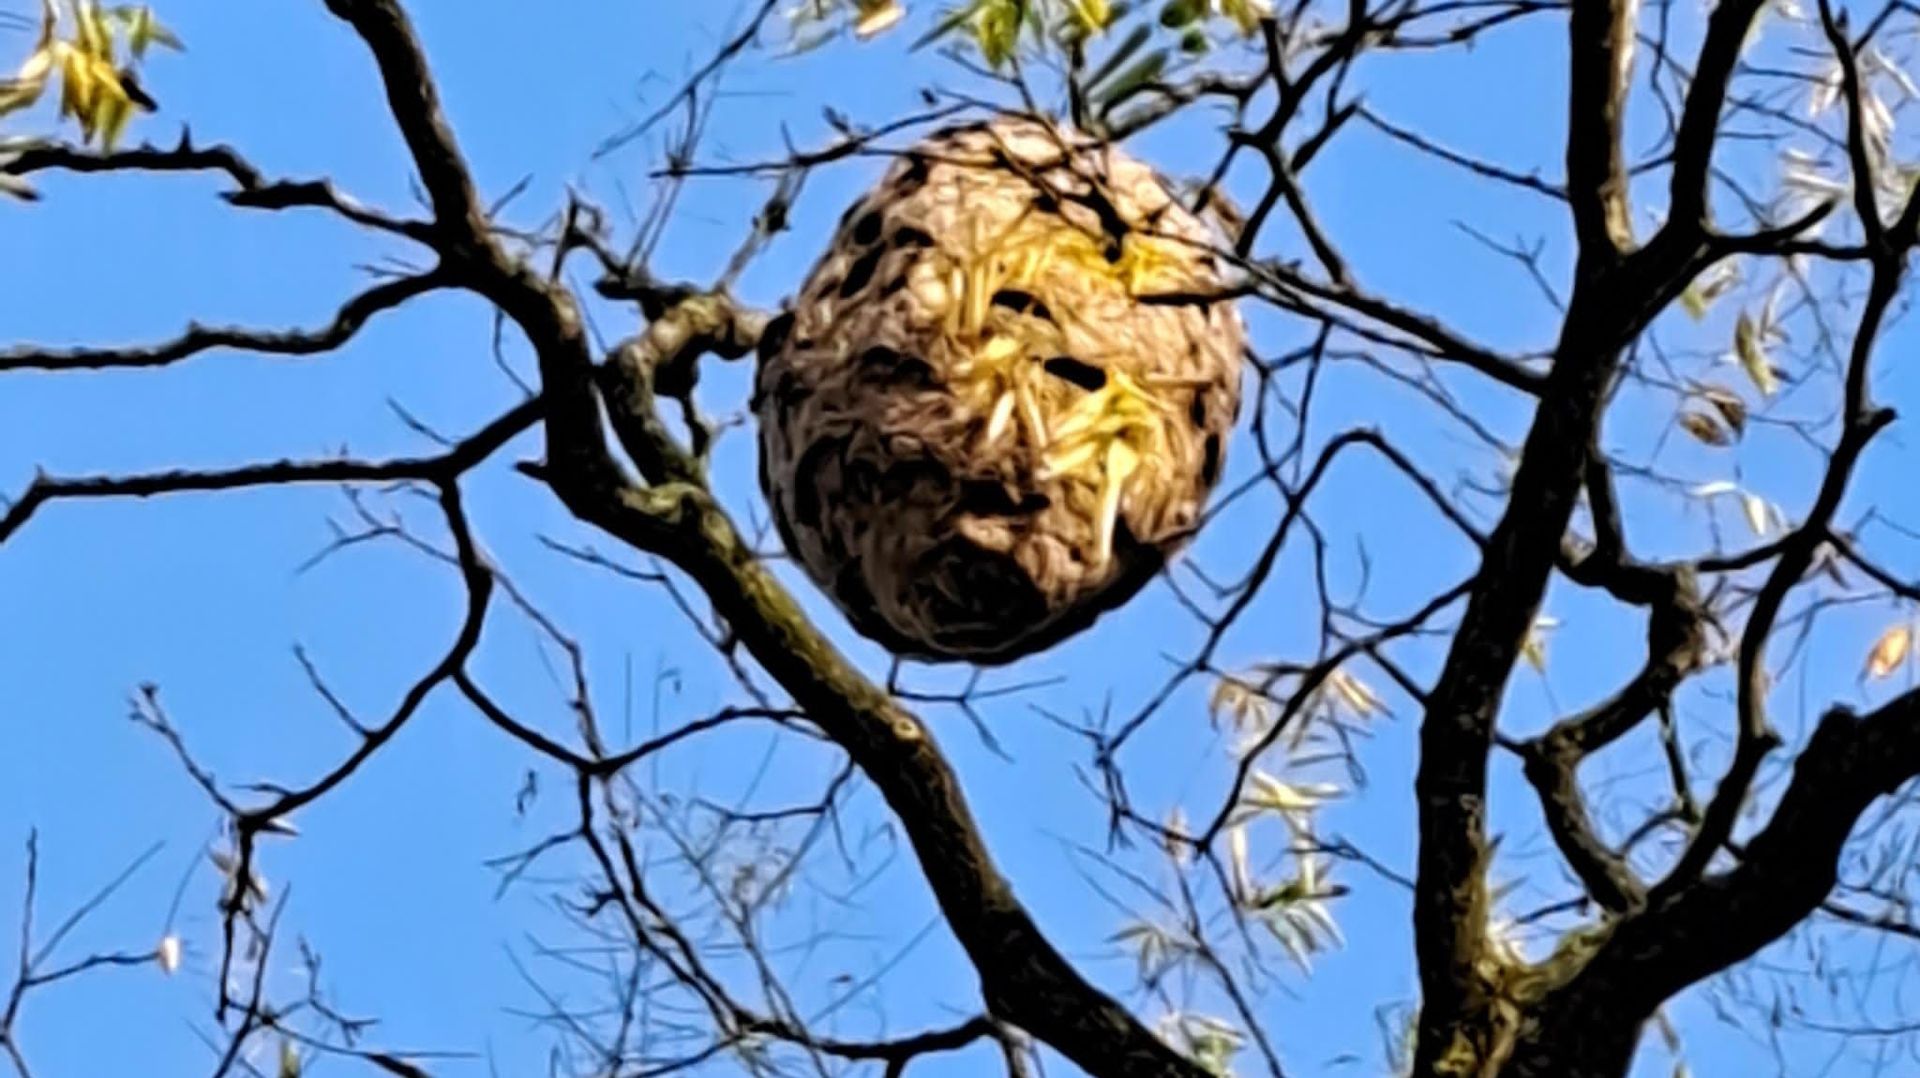 L’un des nids repéré ces dernières semaines par les apiculteurs, au sommet d’un grand arbre. Il faisait presque un mètre de hauteur et présente une forme de poire.